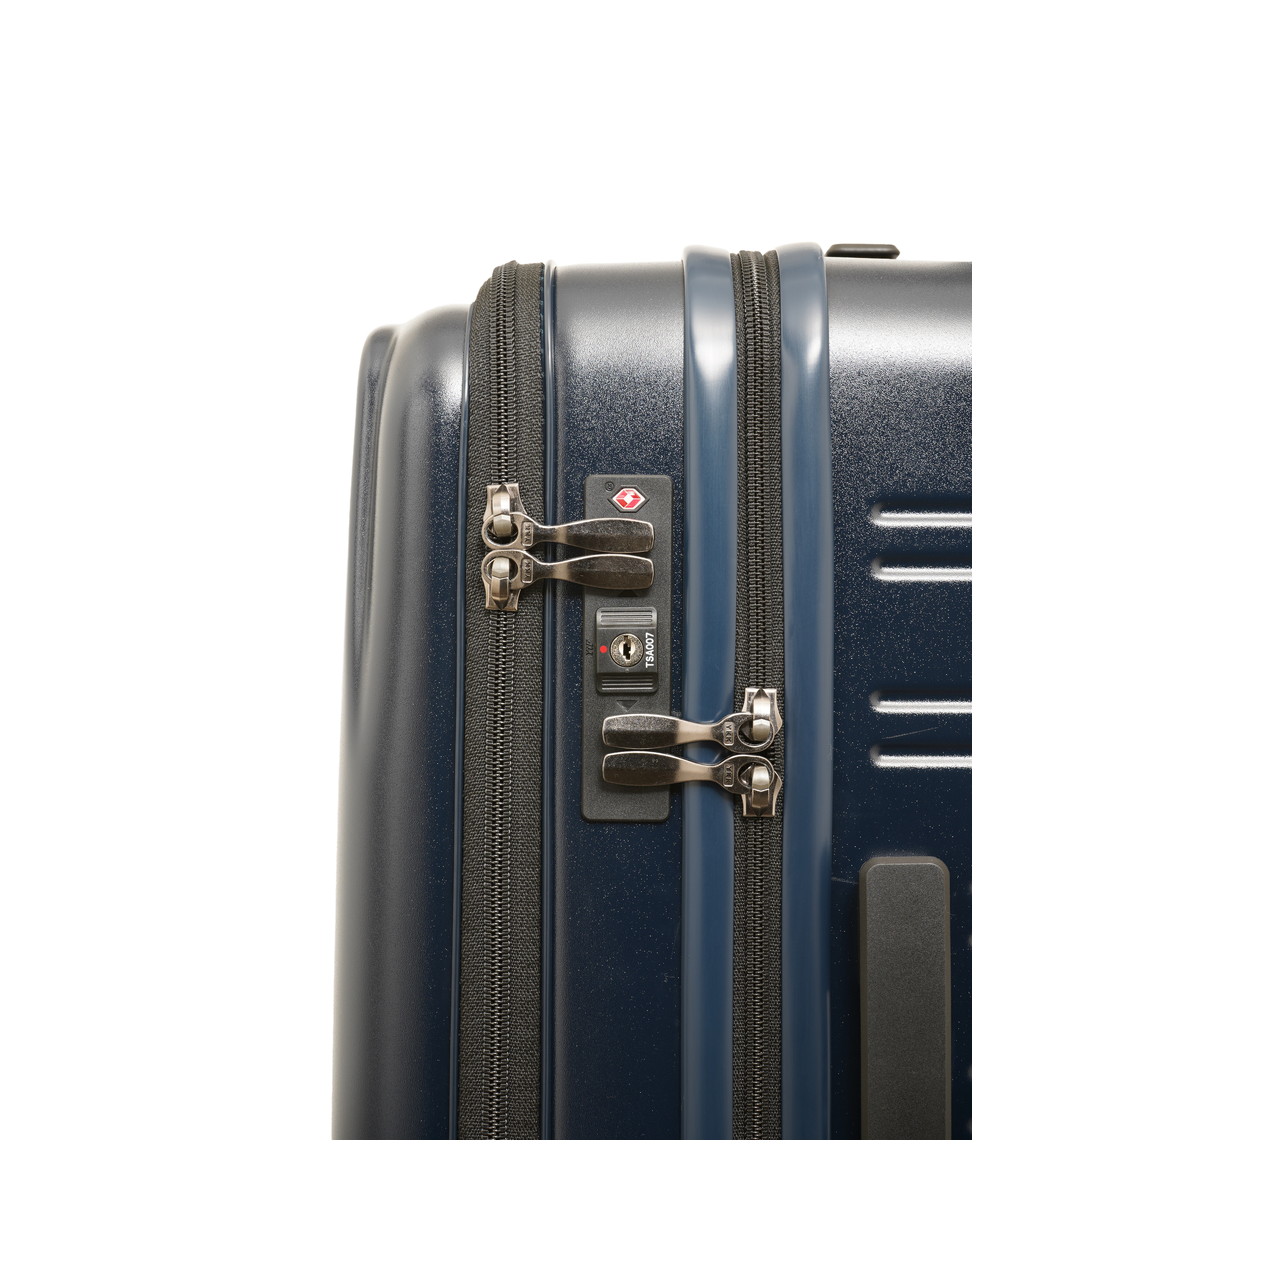 SKYNAVIGATORのスーツケースSK-0839-56のTSロック